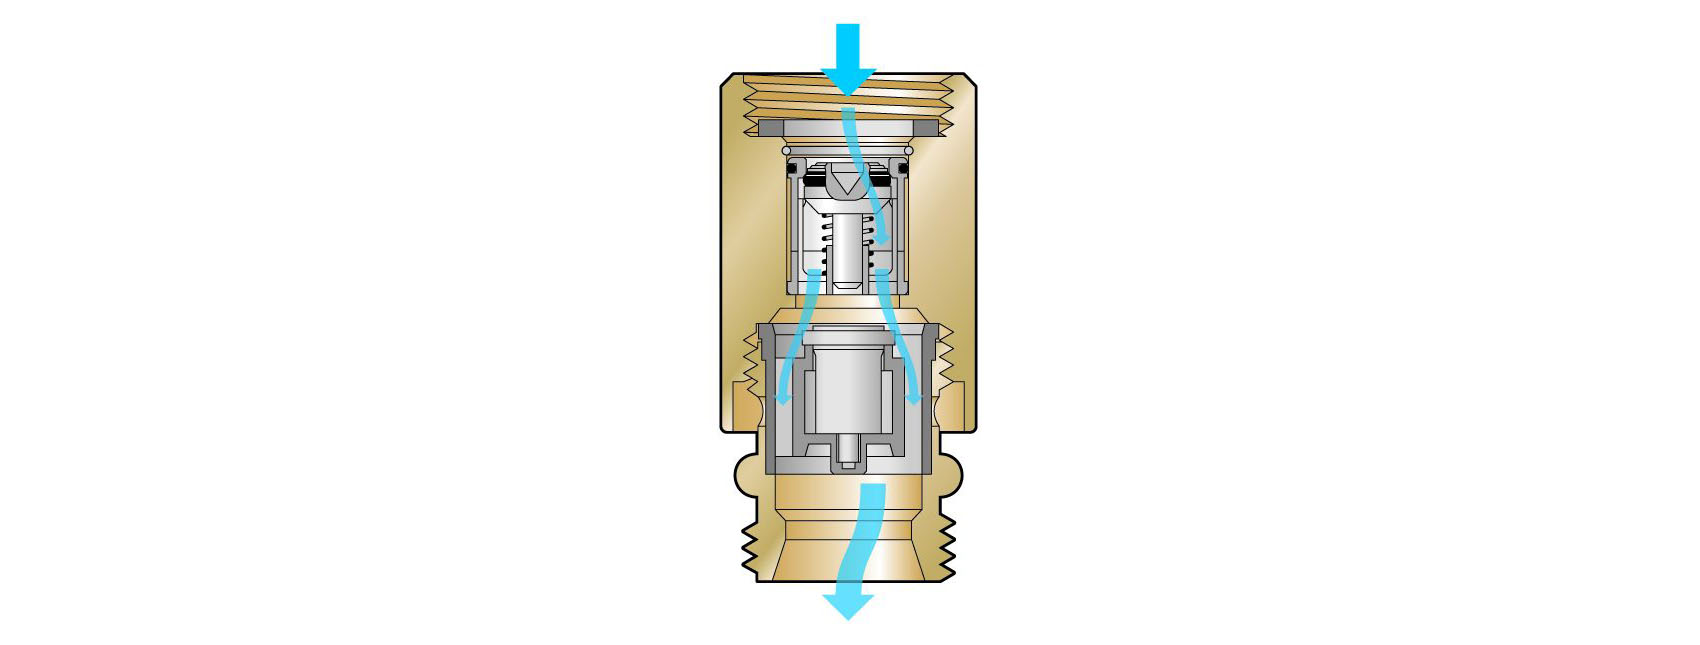 Kombinácia spätnej klapky a privzdušňovača
Funkcia – v smere toku sa za spätnou klapkou inštaluje privzdušňovač potrubia typu C. Tým sa zabráni tak spätnému toku, ako aj tvorbe podtlaku v rozvode. Toto kombinované istenie je možné inštalovať ako samostatnú armatúru, ktorá je integrovaná do výtokovej armatúry, alebo ako zabudovanú podomietkovú kombináciu. Pri montáži je dôležité vždy mať na zreteli smer toku a dodržať výšku nad prevádzkovou výškou hladiny vody 250/300 mm.